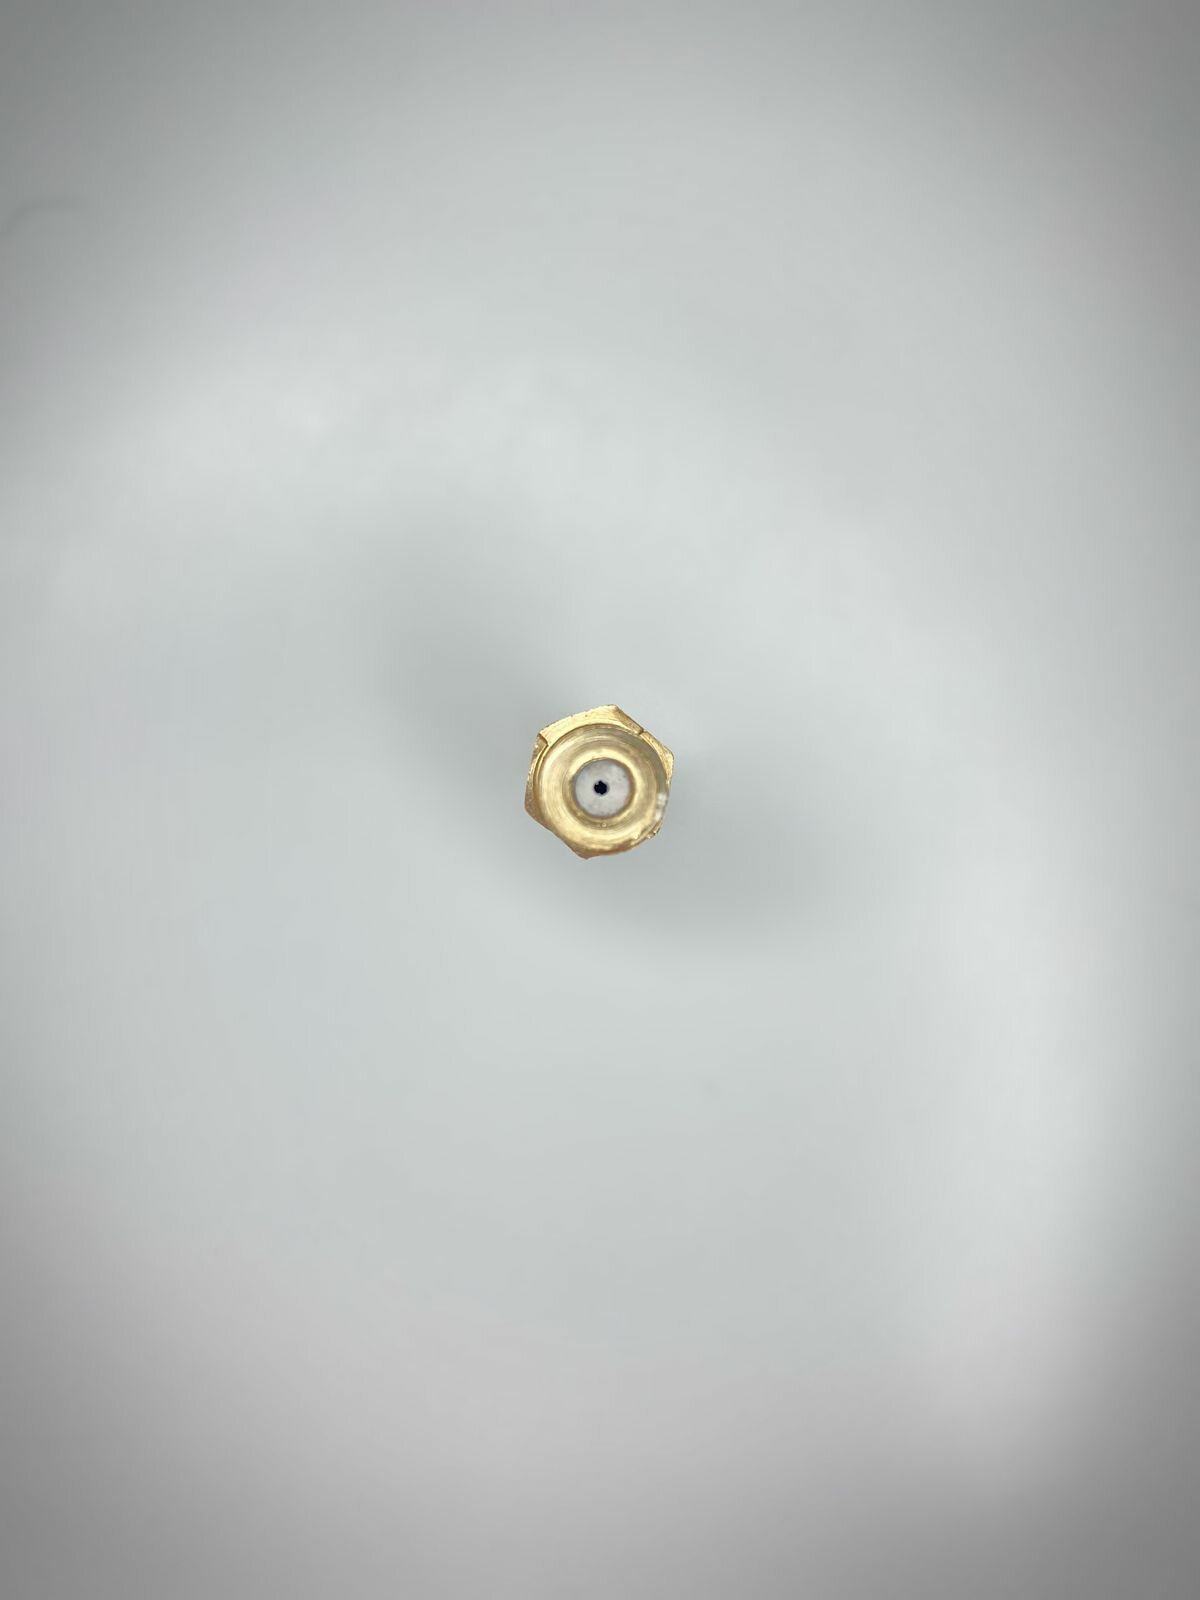 Жиклер (форсунка) к септику Юнилос Астра, для продувки илового насоса и рециркулятора, диаметр 0,9мм.